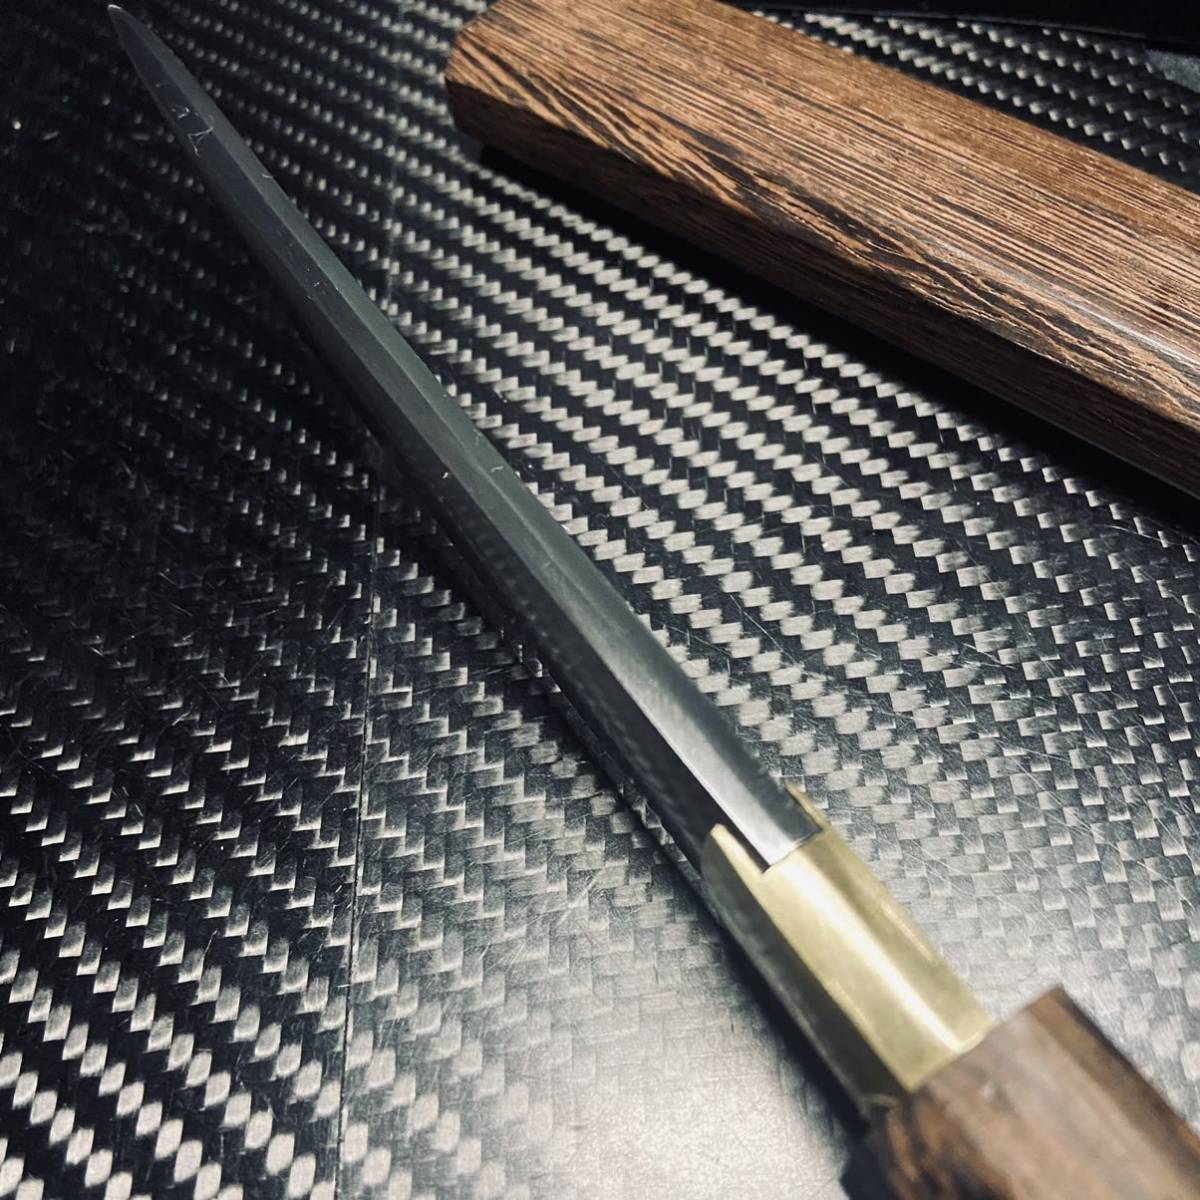 高級木製 短刀 和風短刀 木鞘ナイフ 和式ナイフ 伝統工芸 日本刀型 216g_画像4